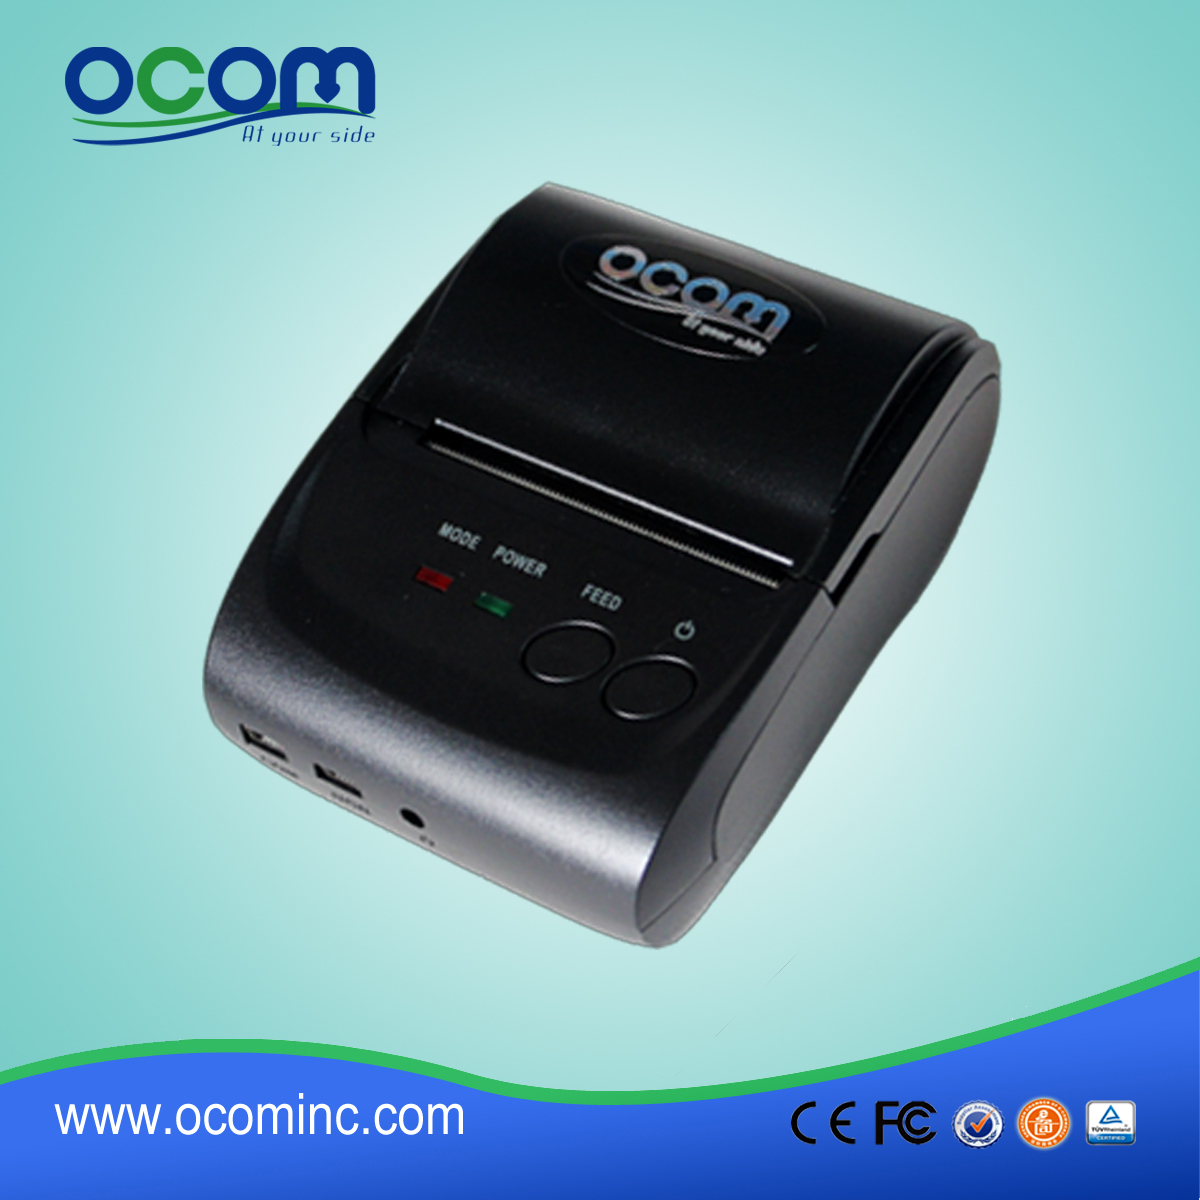 OCPP-M05: Gute Qualität! neue kommenden tragbaren Drucker Erhalt android bluetooth